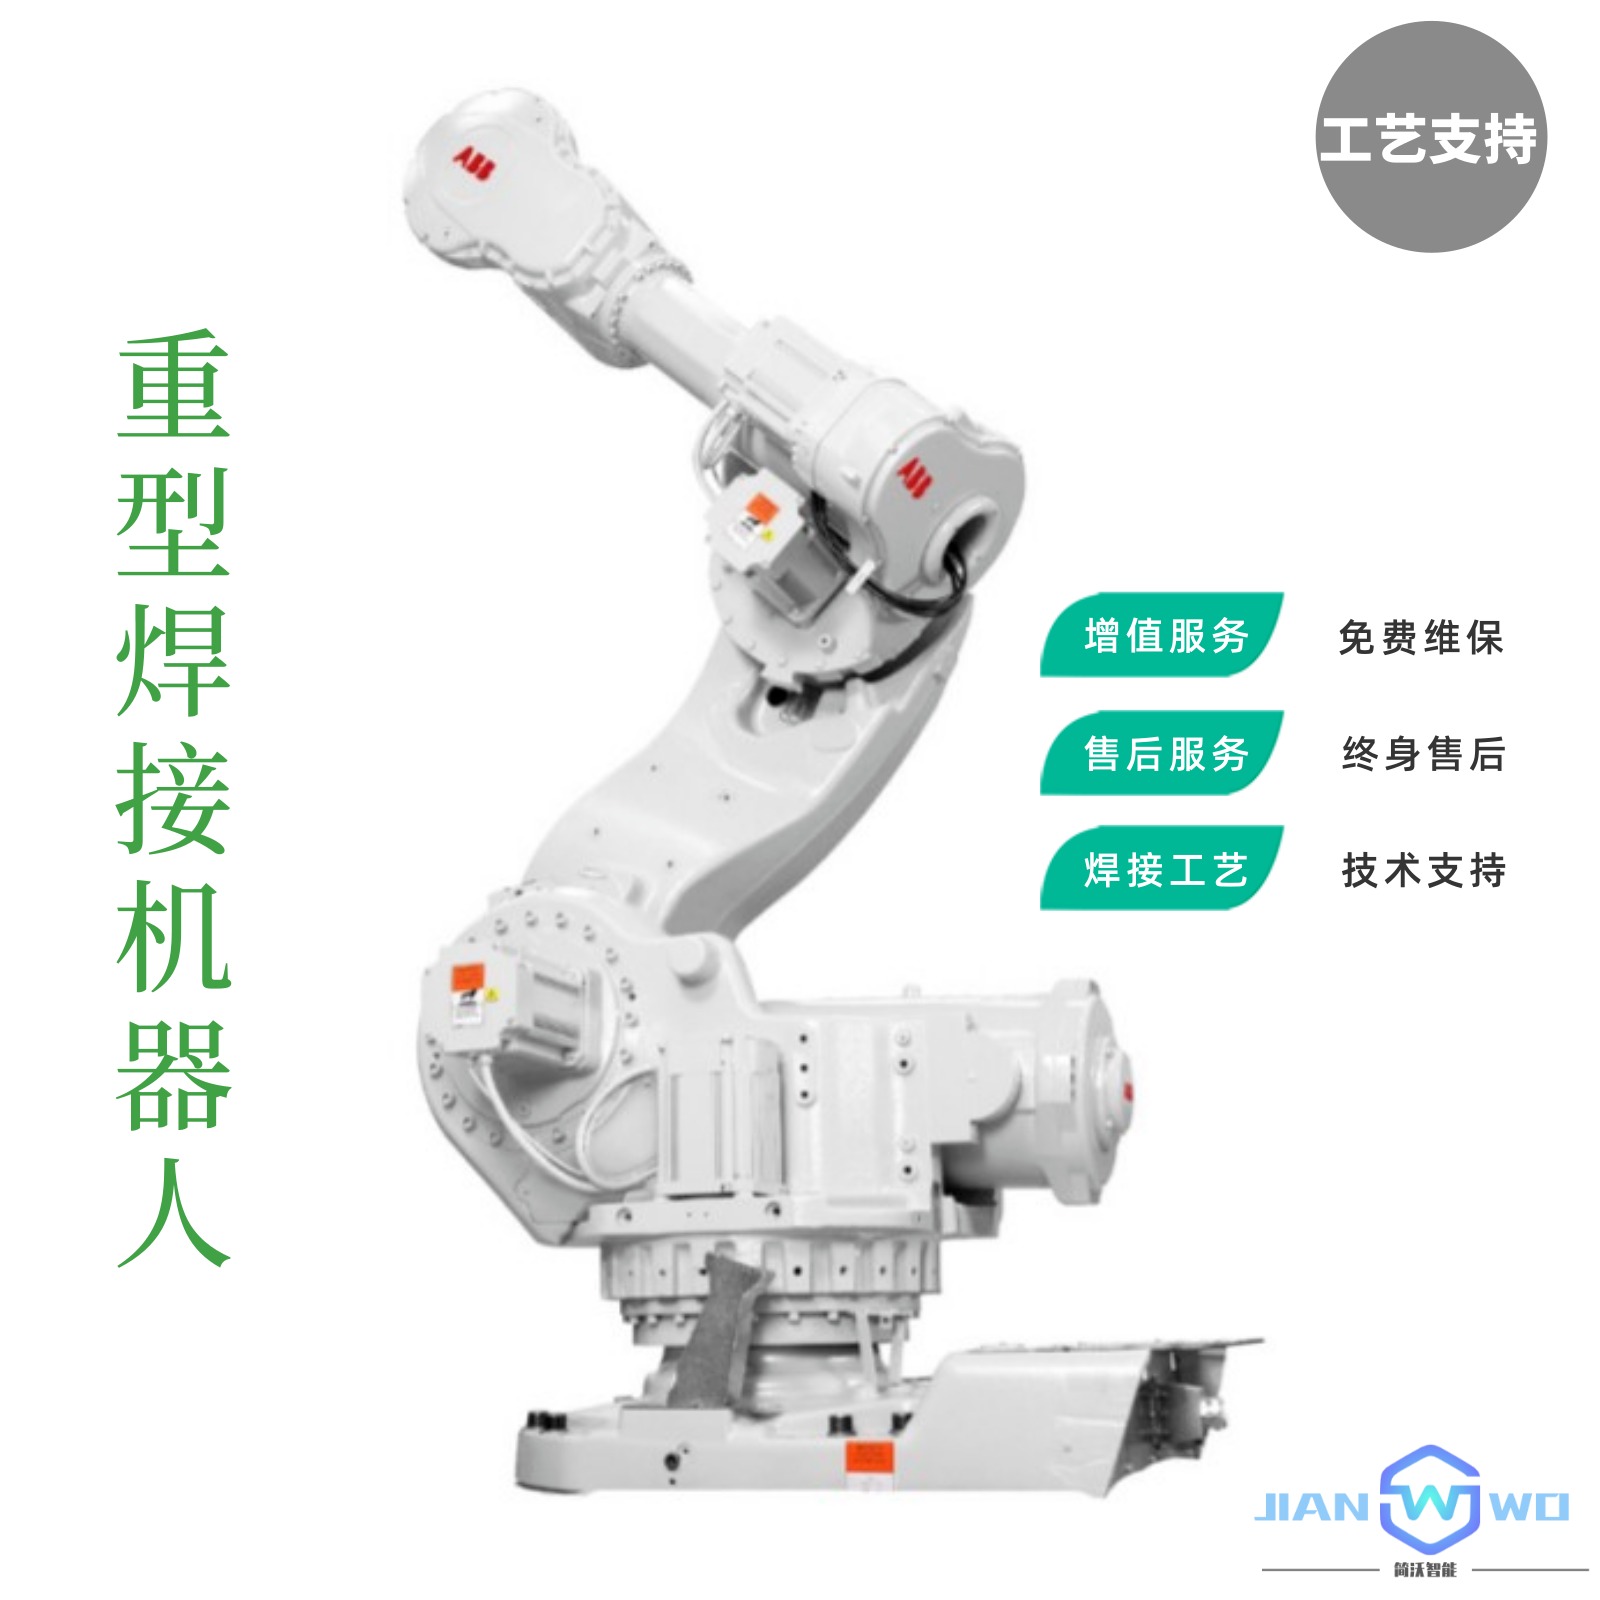 自动焊接机器人 焊接效率高工件品质好图片